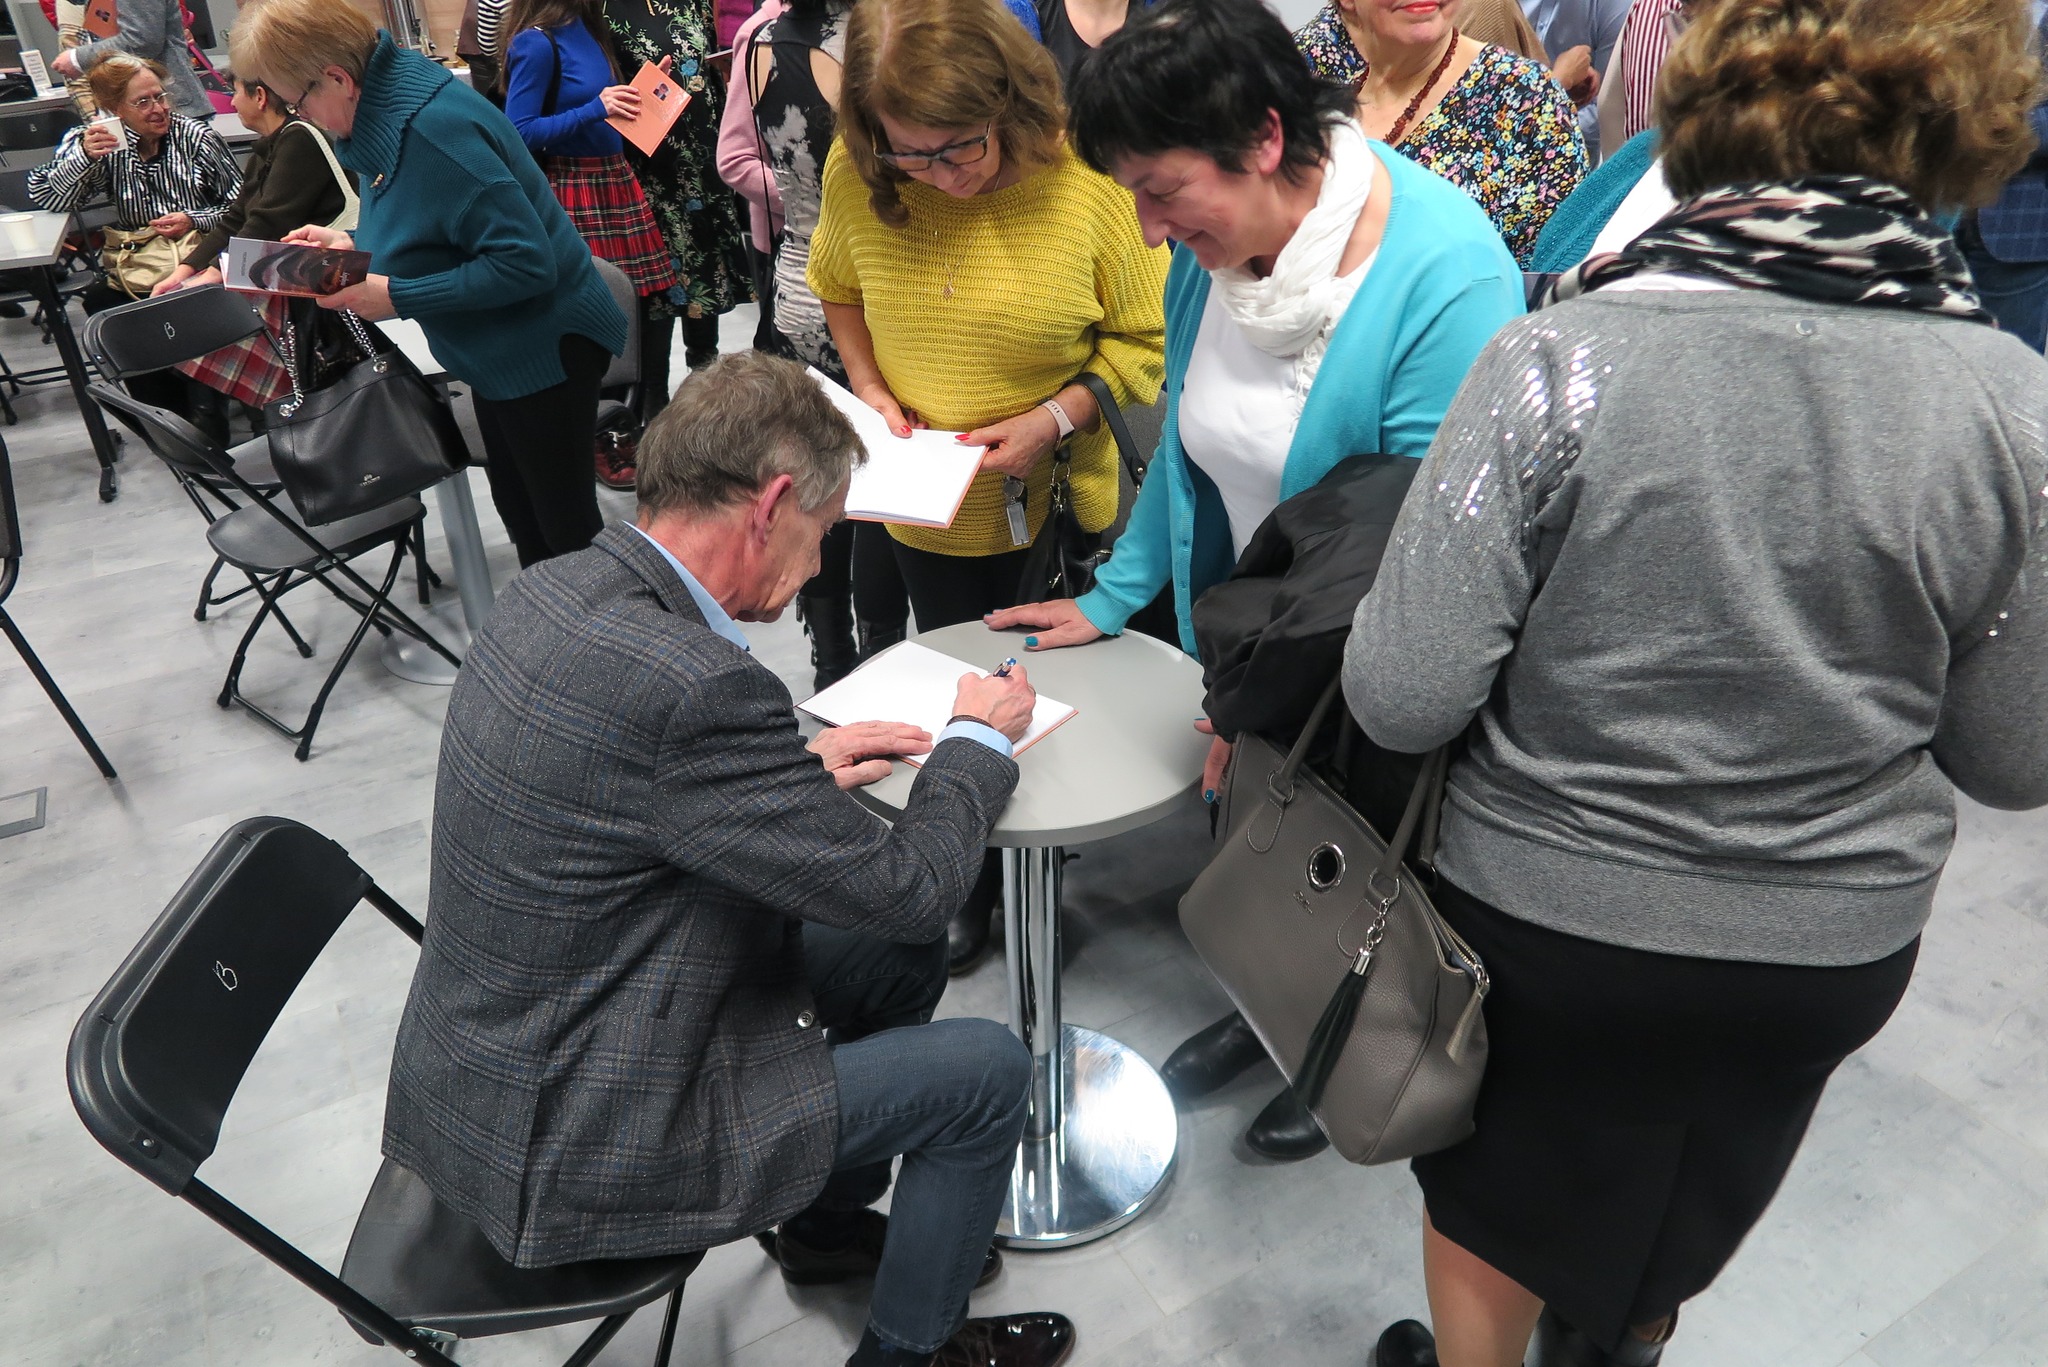 autor podpisuje książki publiczności siedząc przy okrągłym stoliku